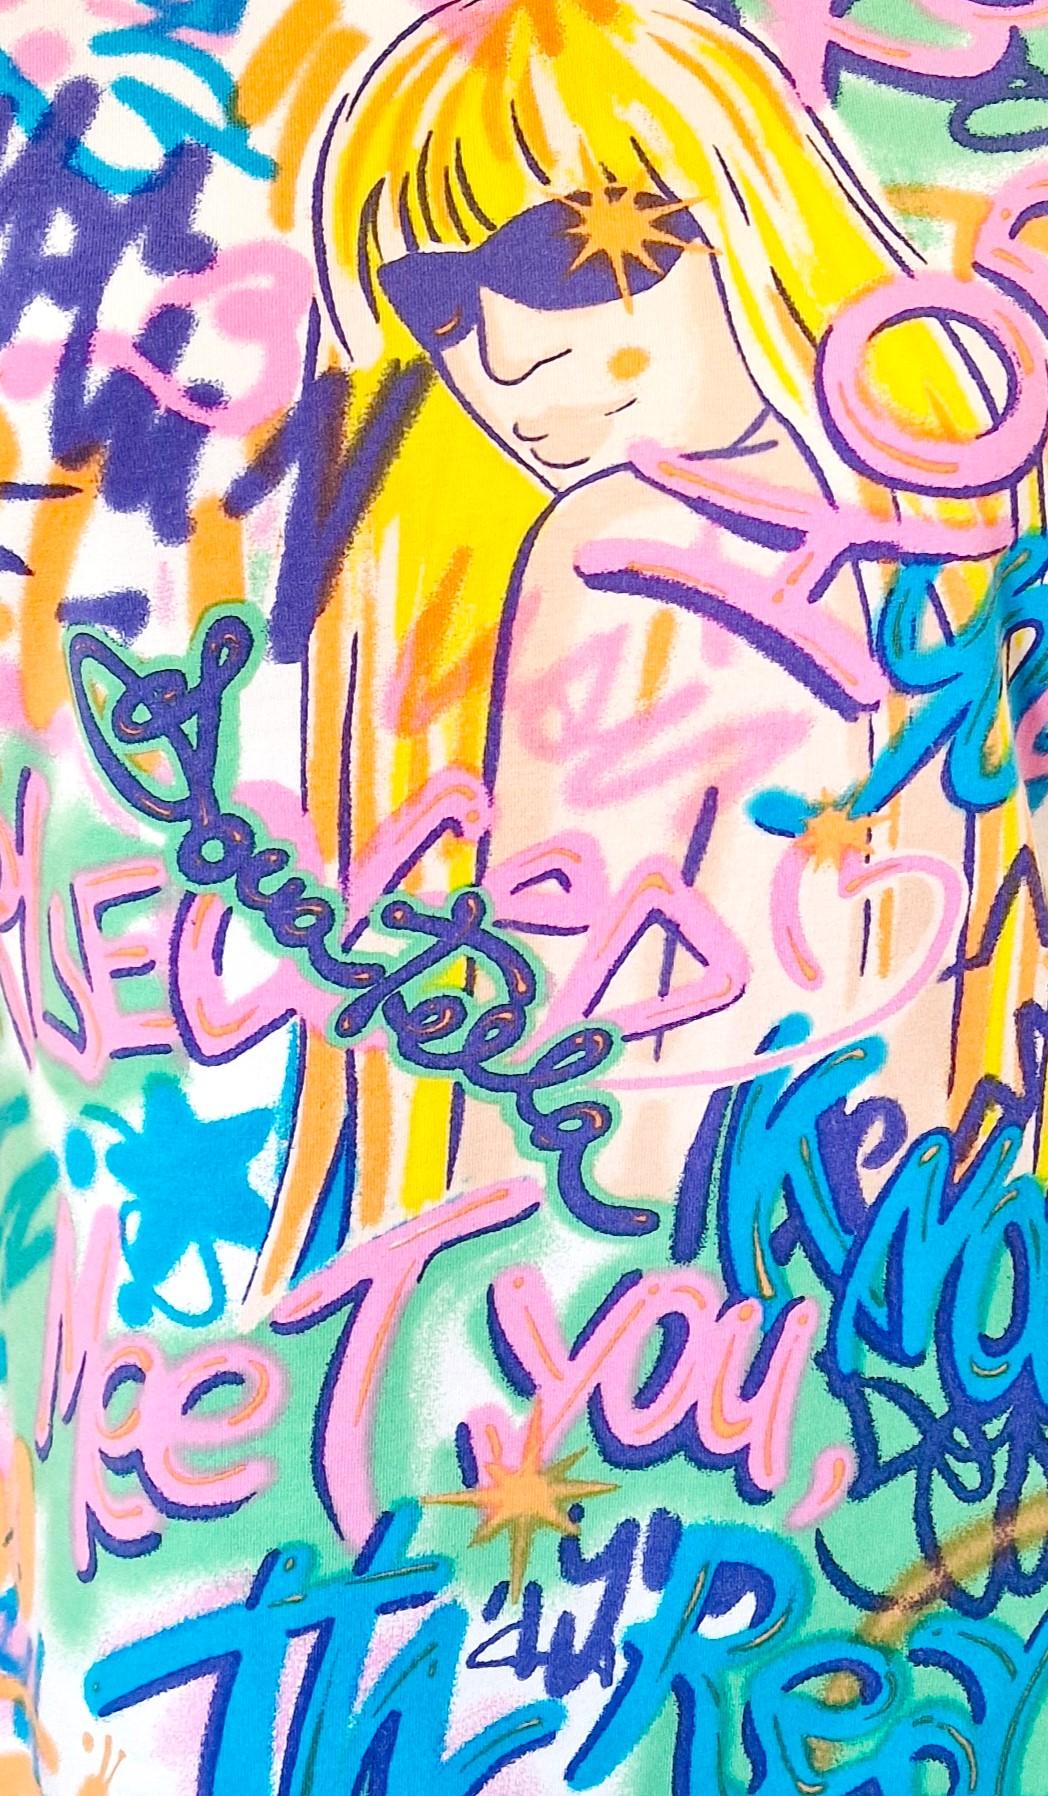 
Donatell Neon-Graffiti-Top von Versace!
SEHR GUTER Zustand.

GRÖSSE
Männer: von XS bis kleiner mittel.
Frauen: von mittel bis groß
Kein Label für die Größe.
Länge: 60 cm / 23.6 inch
Oberweite: 46 cm / 18.1 inch
Taille: 38 cm / 15 Zoll
Schulter zu